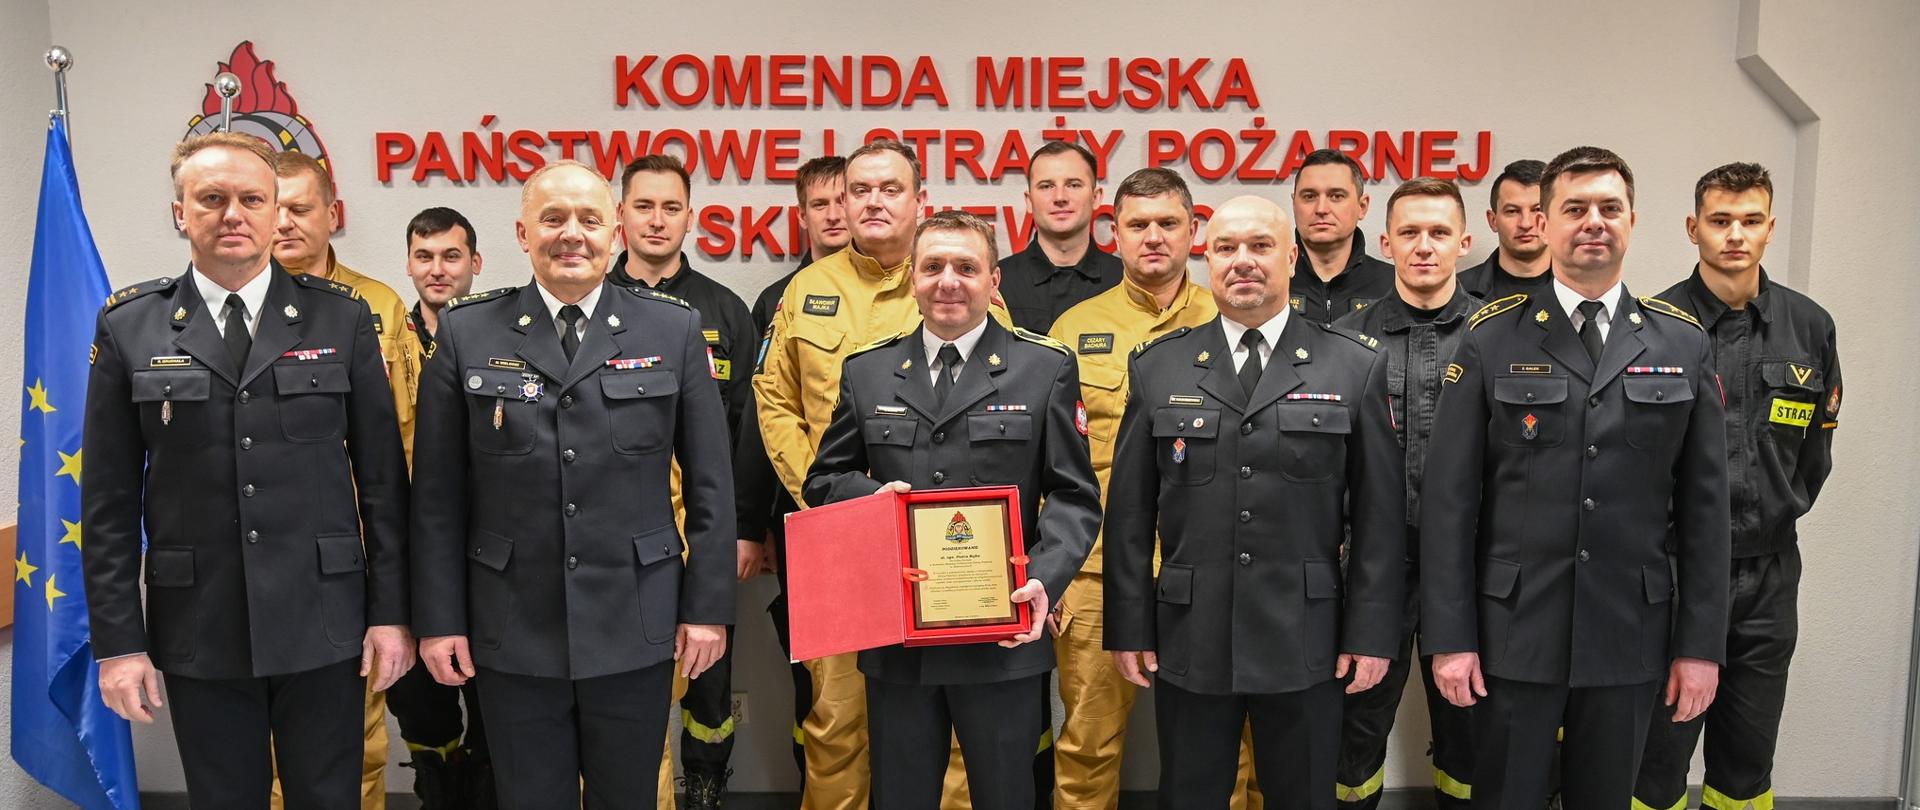 Strażacy w mundurach wyjściowych, służbowych i ubraniach koszarowych stoją na tle białej ściany z czerwonym napisem Komenda Miejska Państwowej Straży Pożarnej w Skierniewicach